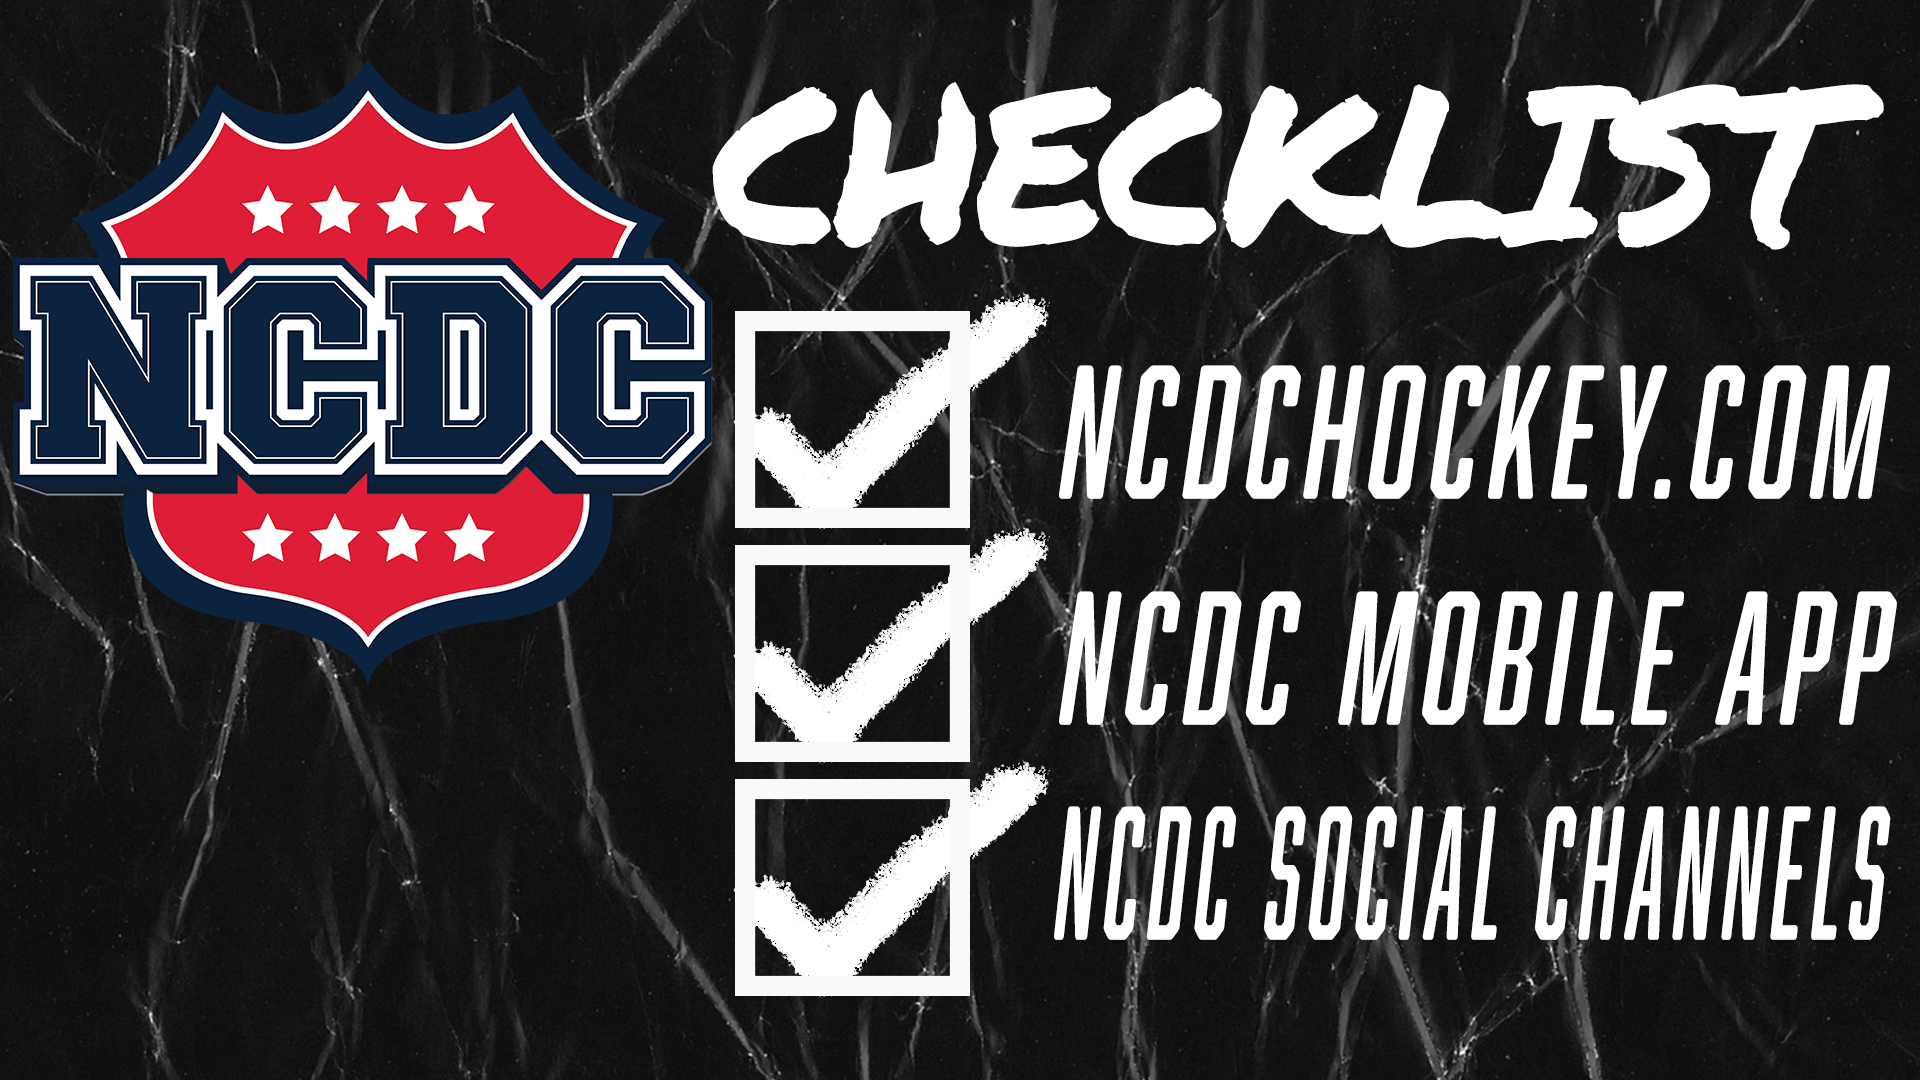 NCDC Announces NCDCHockey.com Website, NCDC Mobile App And Social Media